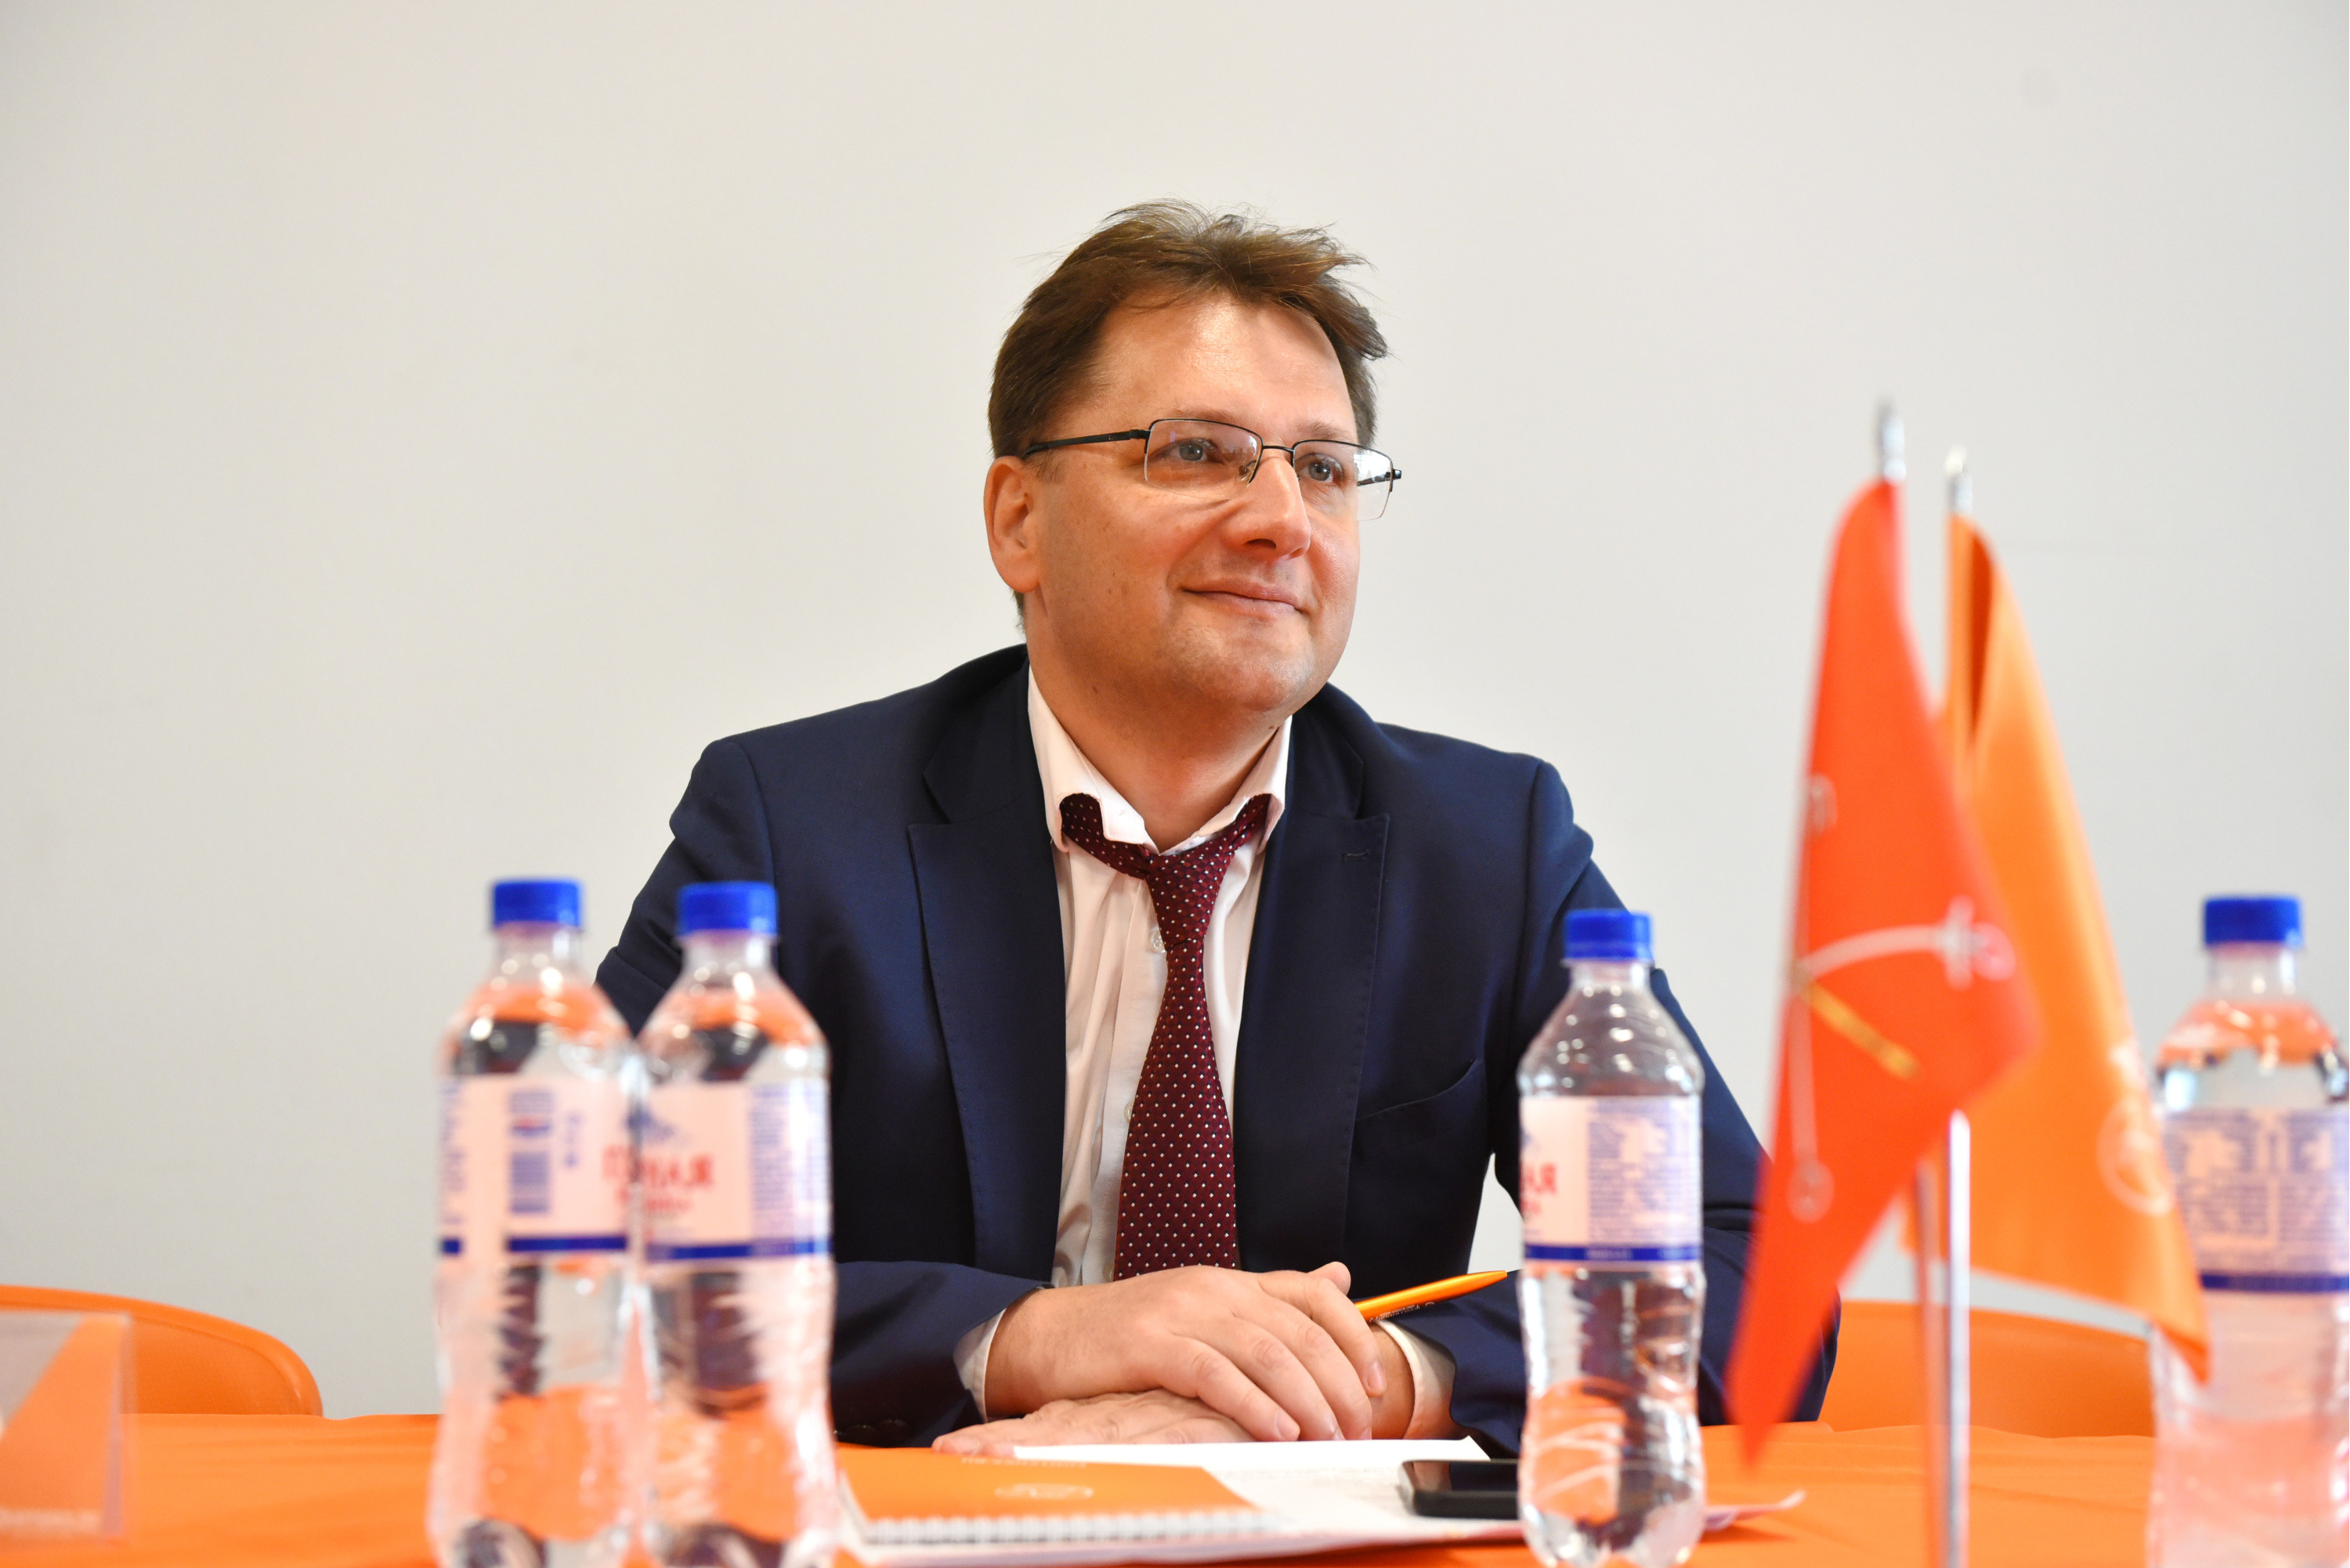 Сергей Королёв, вице-президент по корпоративному бизнесу Банка SIAB